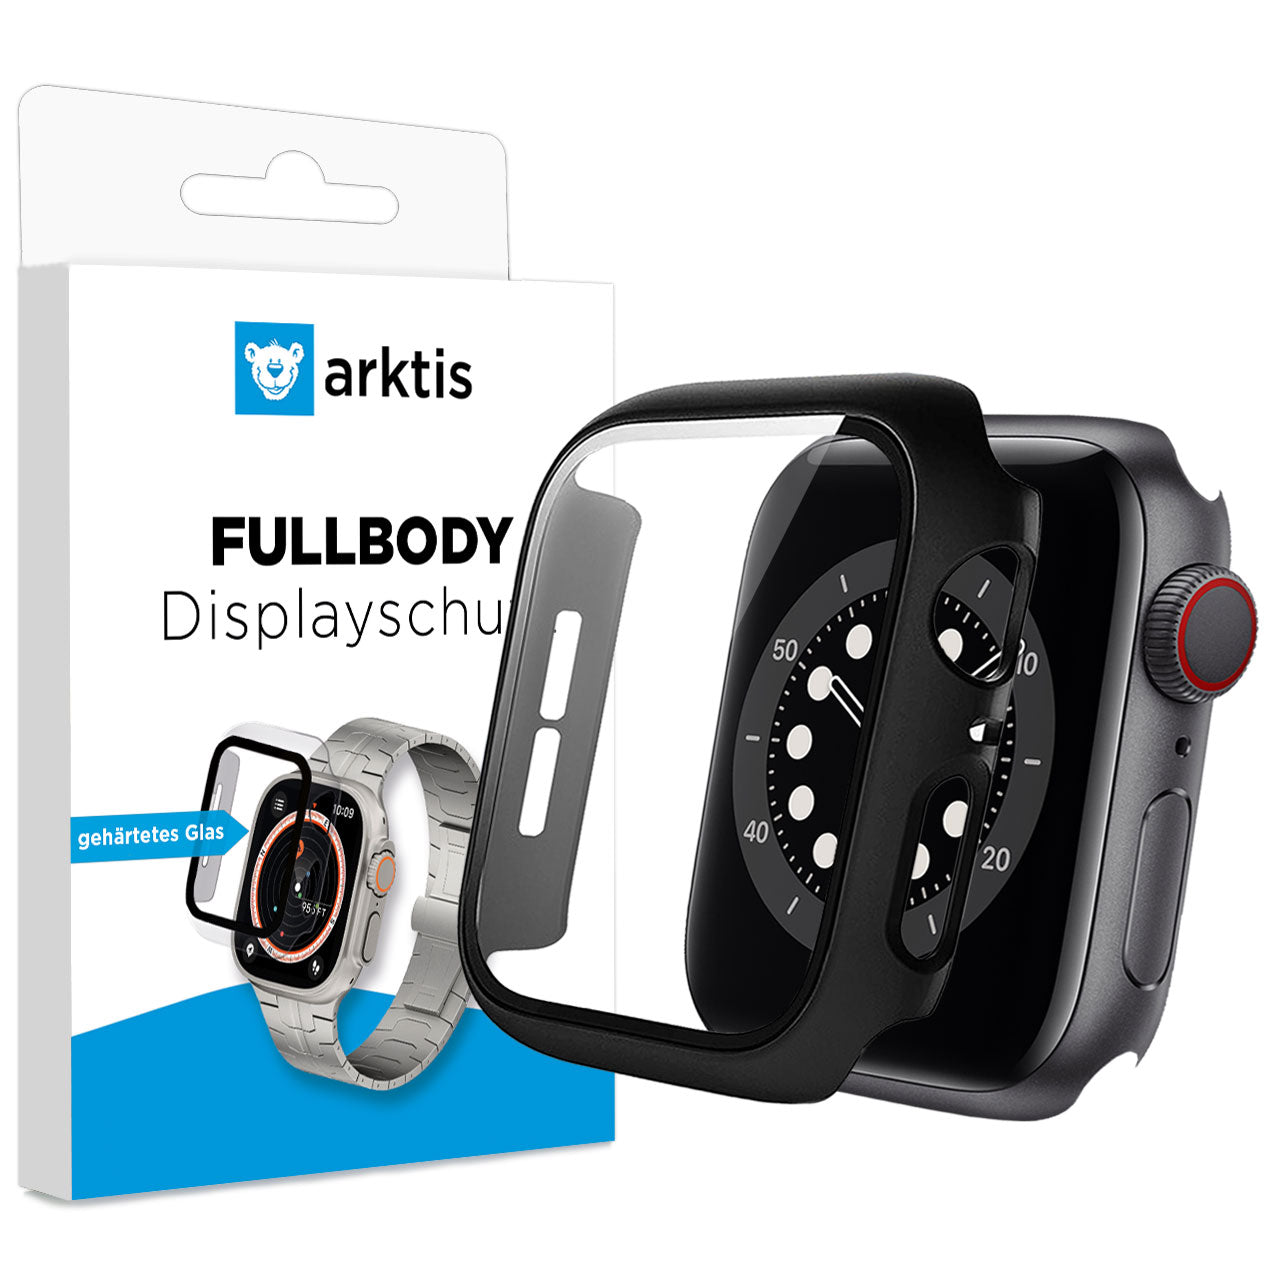 arktis FULLBODY Displayschutz für Apple Watch 4-5-6-SE